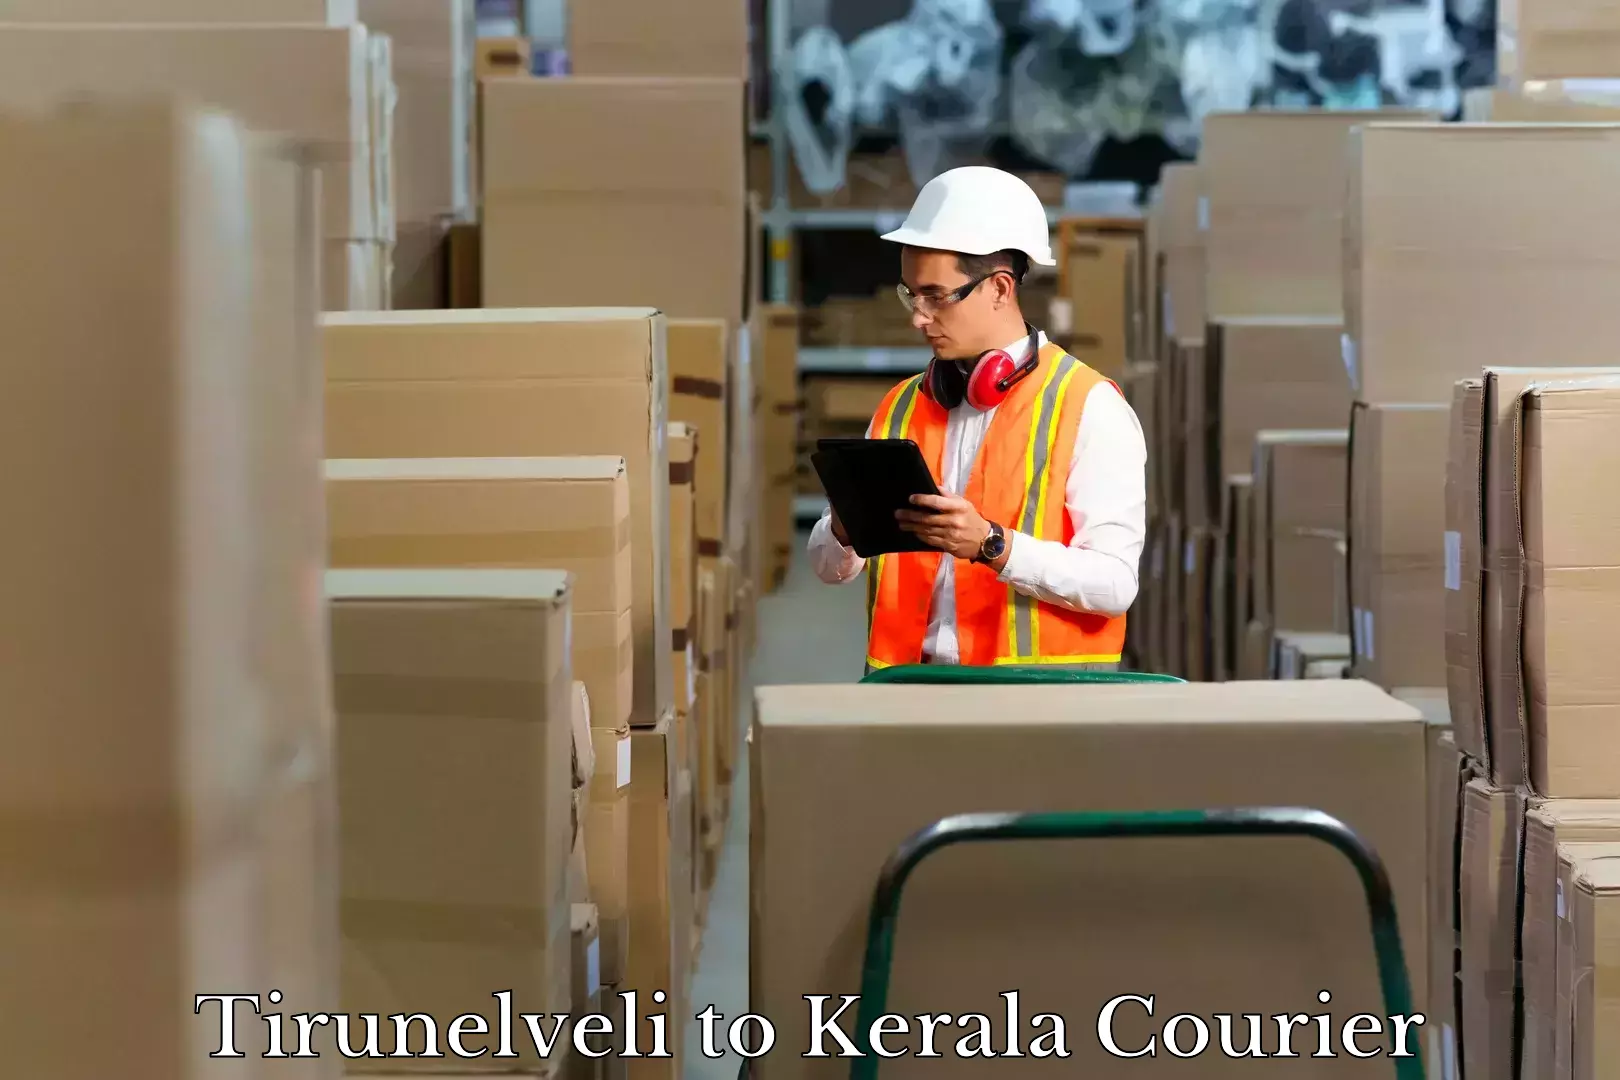 Luggage shipment tracking Tirunelveli to Ernakulam